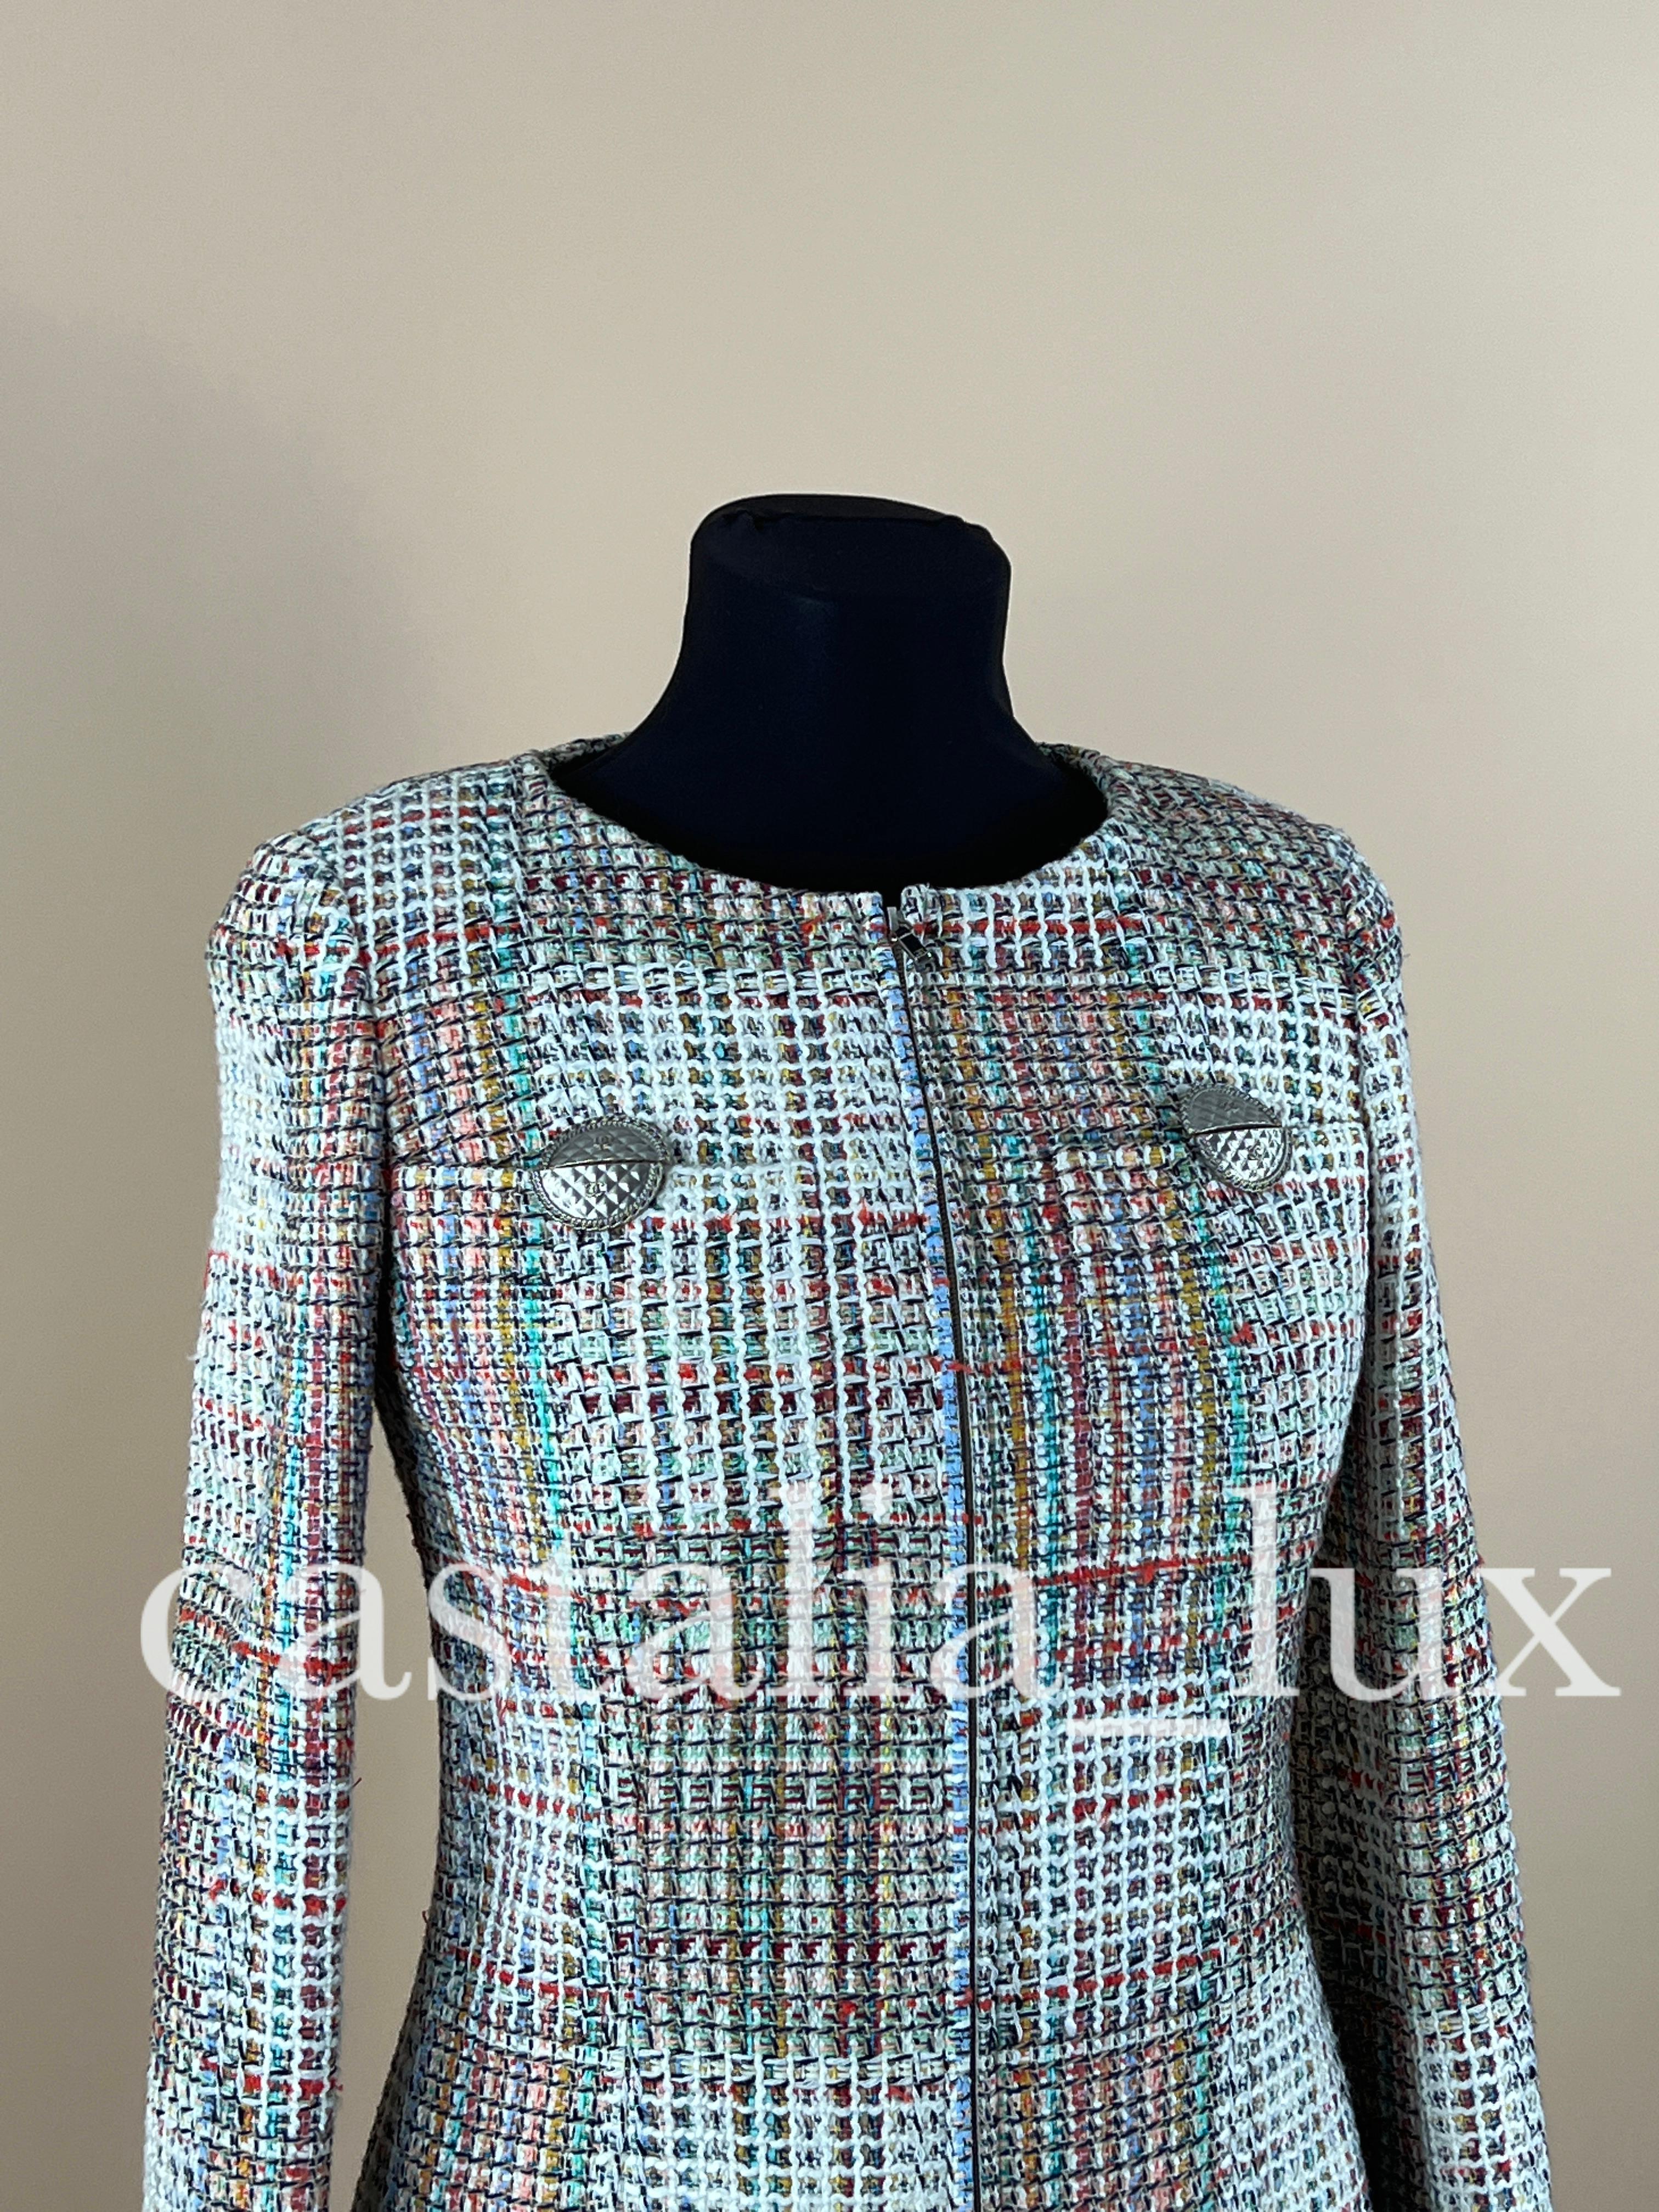 Chanel New Paris / Cuba Lesage Tweed Jacket For Sale 3